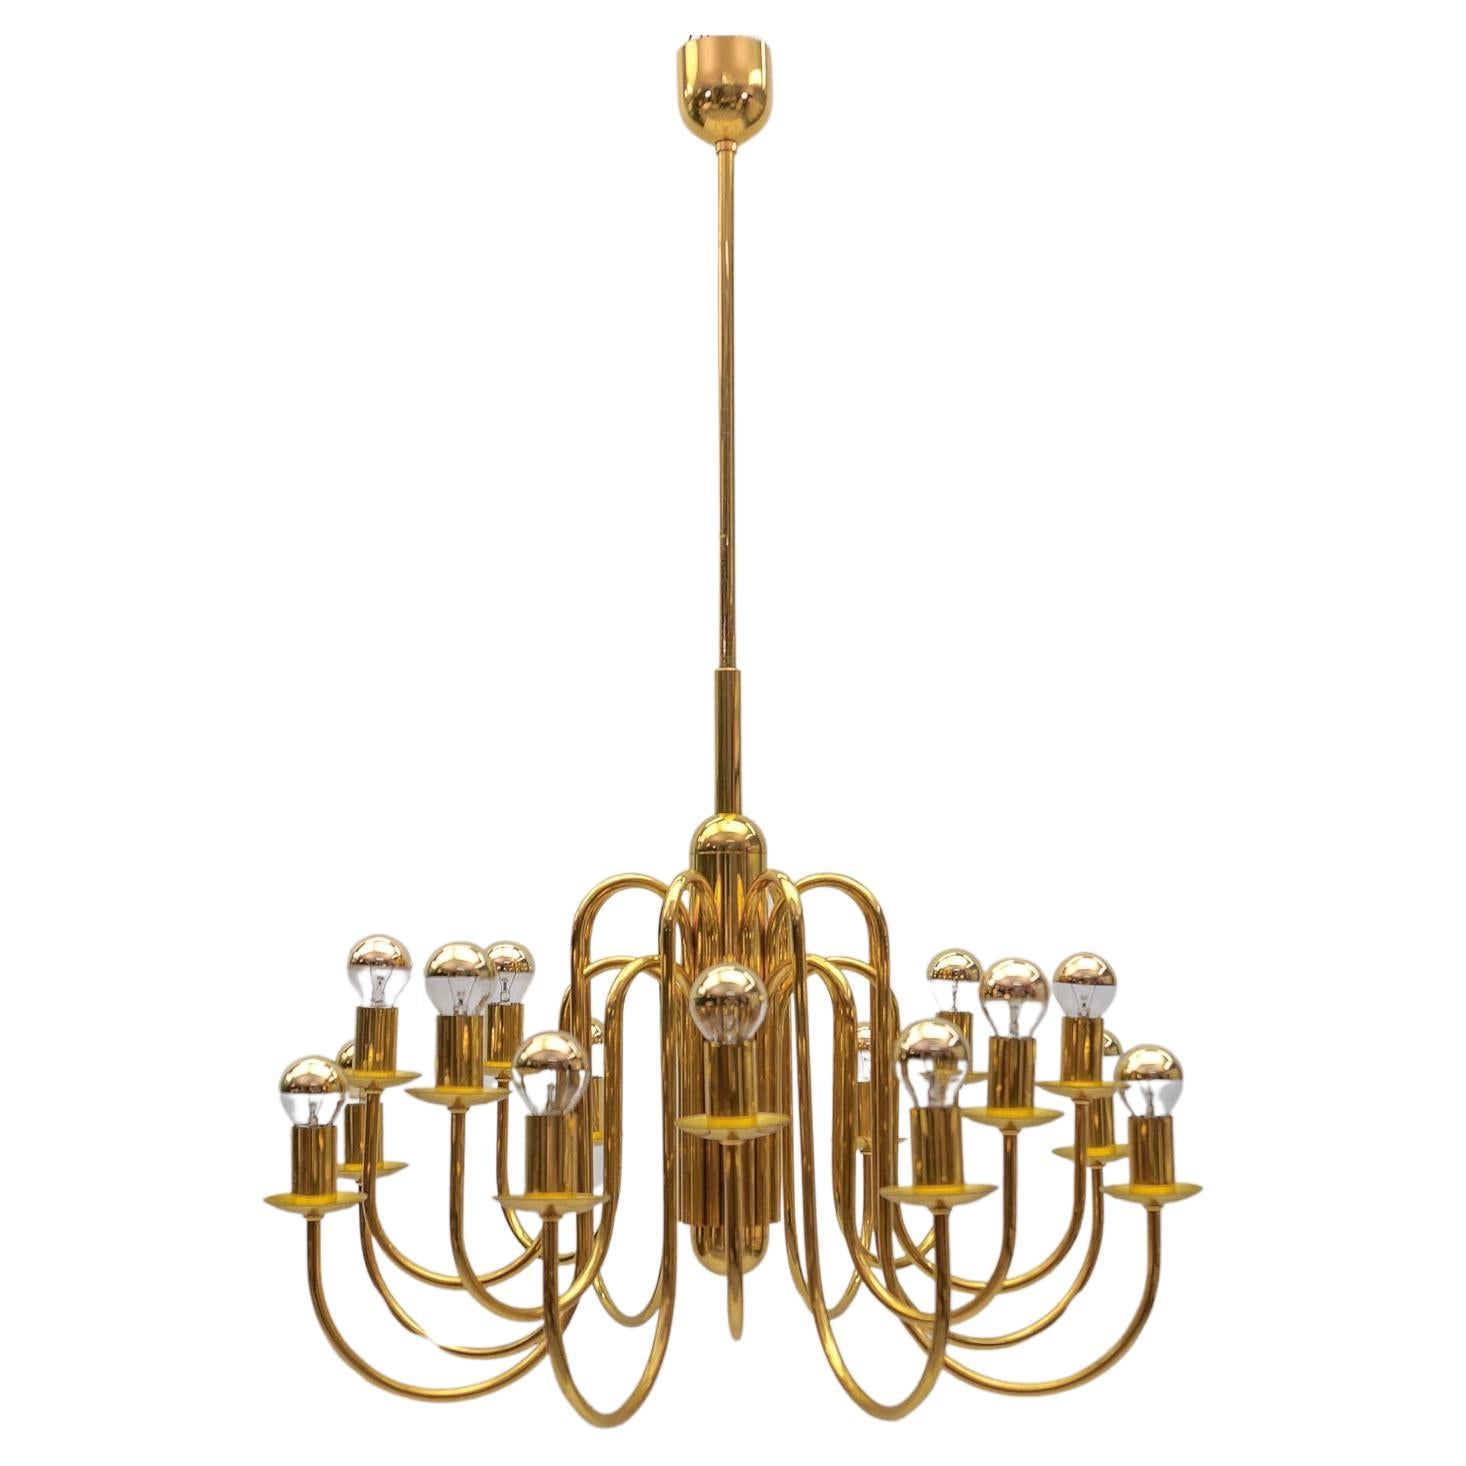 Lovely Elegant Mid-Century Modern Brass Chandelier Lamp, Italy 1970s For Sale